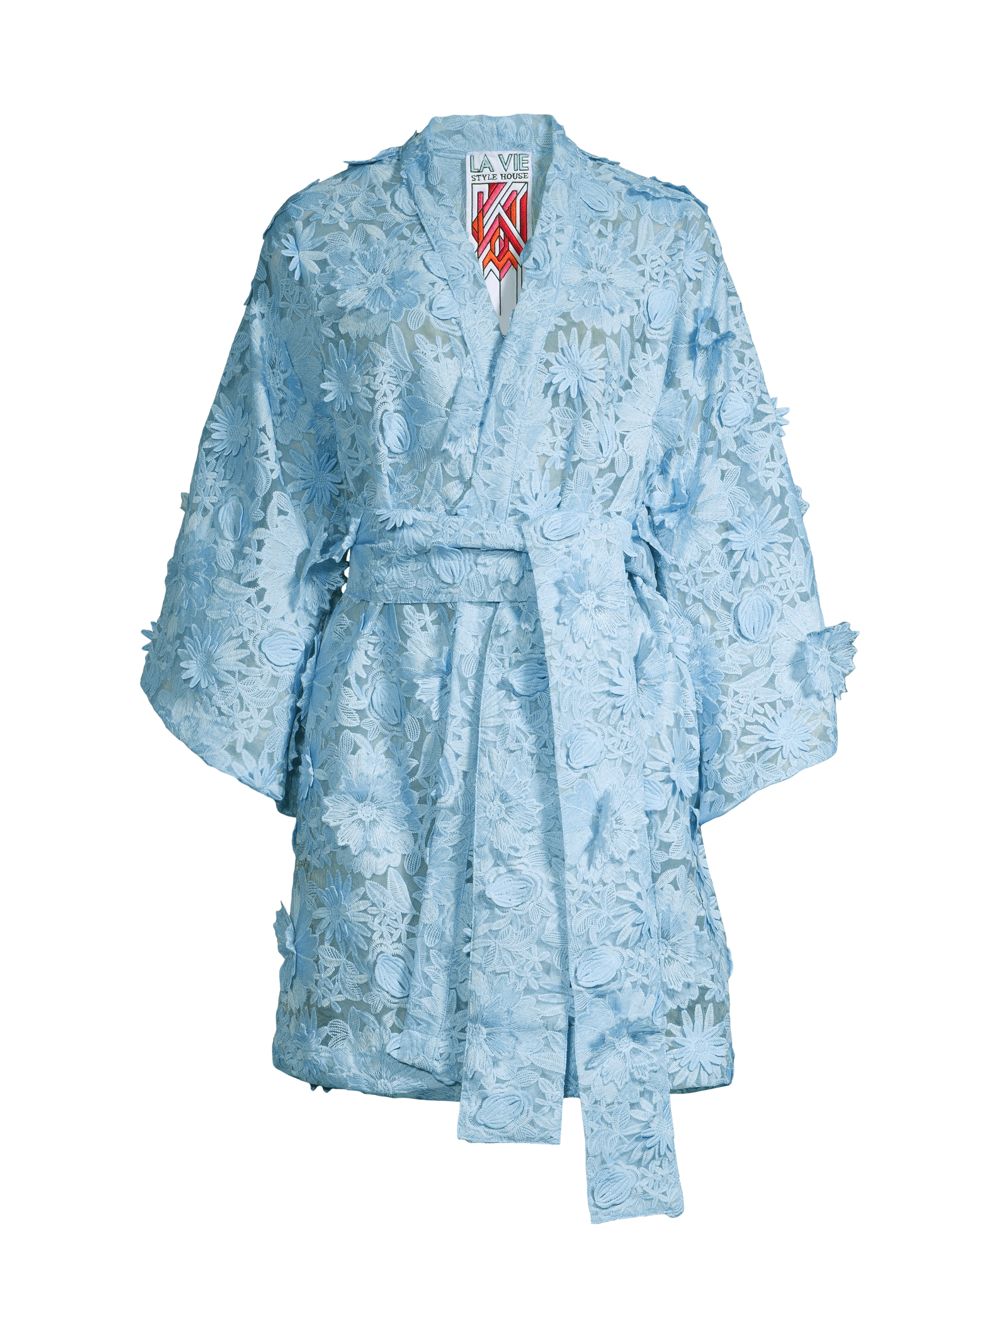 Мини-платье с запахом и кружевом и аппликацией La Vie Style House, синий мини платье из парчи с запахом la vie style house белый